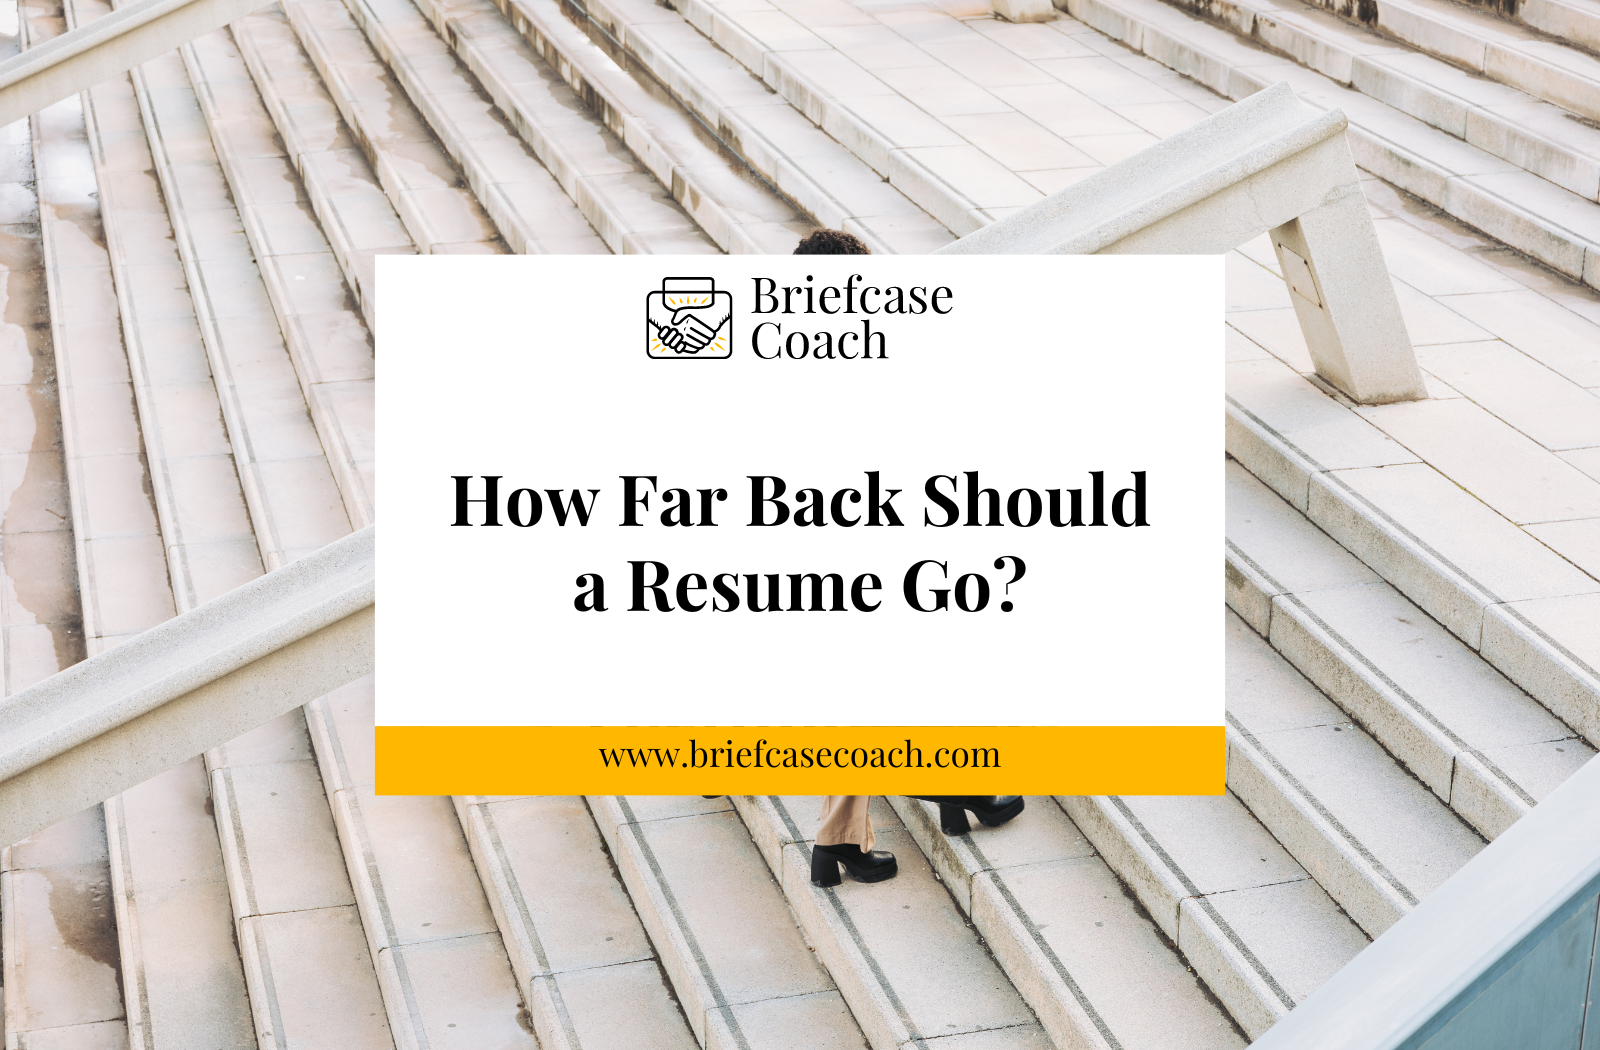 How Far Back Should an Executive Resume Go?